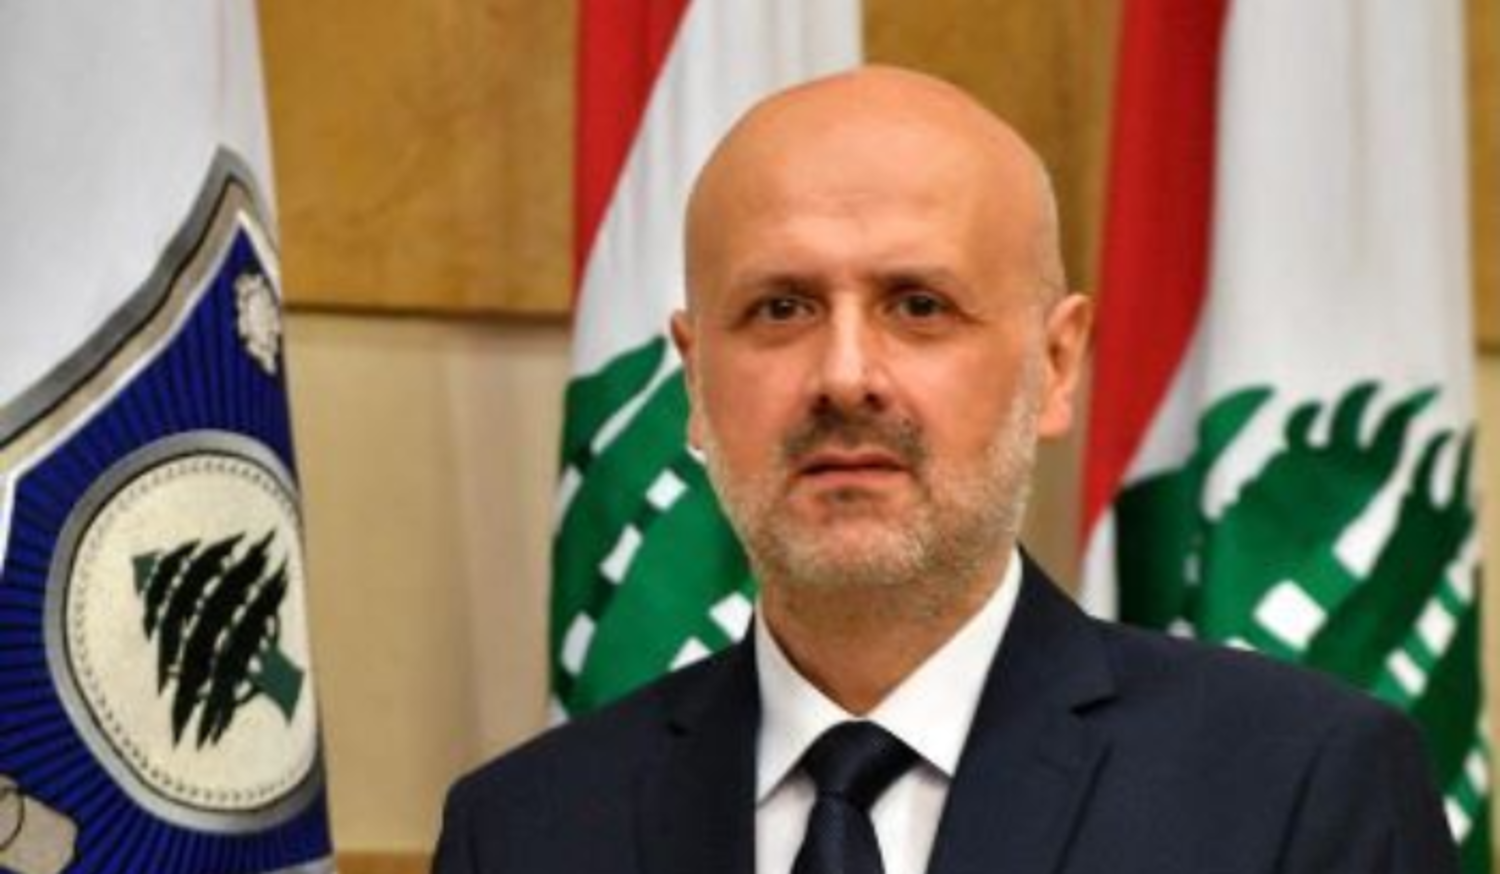 وزير الداخلية اللبناني في حكومة تصريف الأعمال بسام المولوي (الوكالة الوطنية للإعلام)